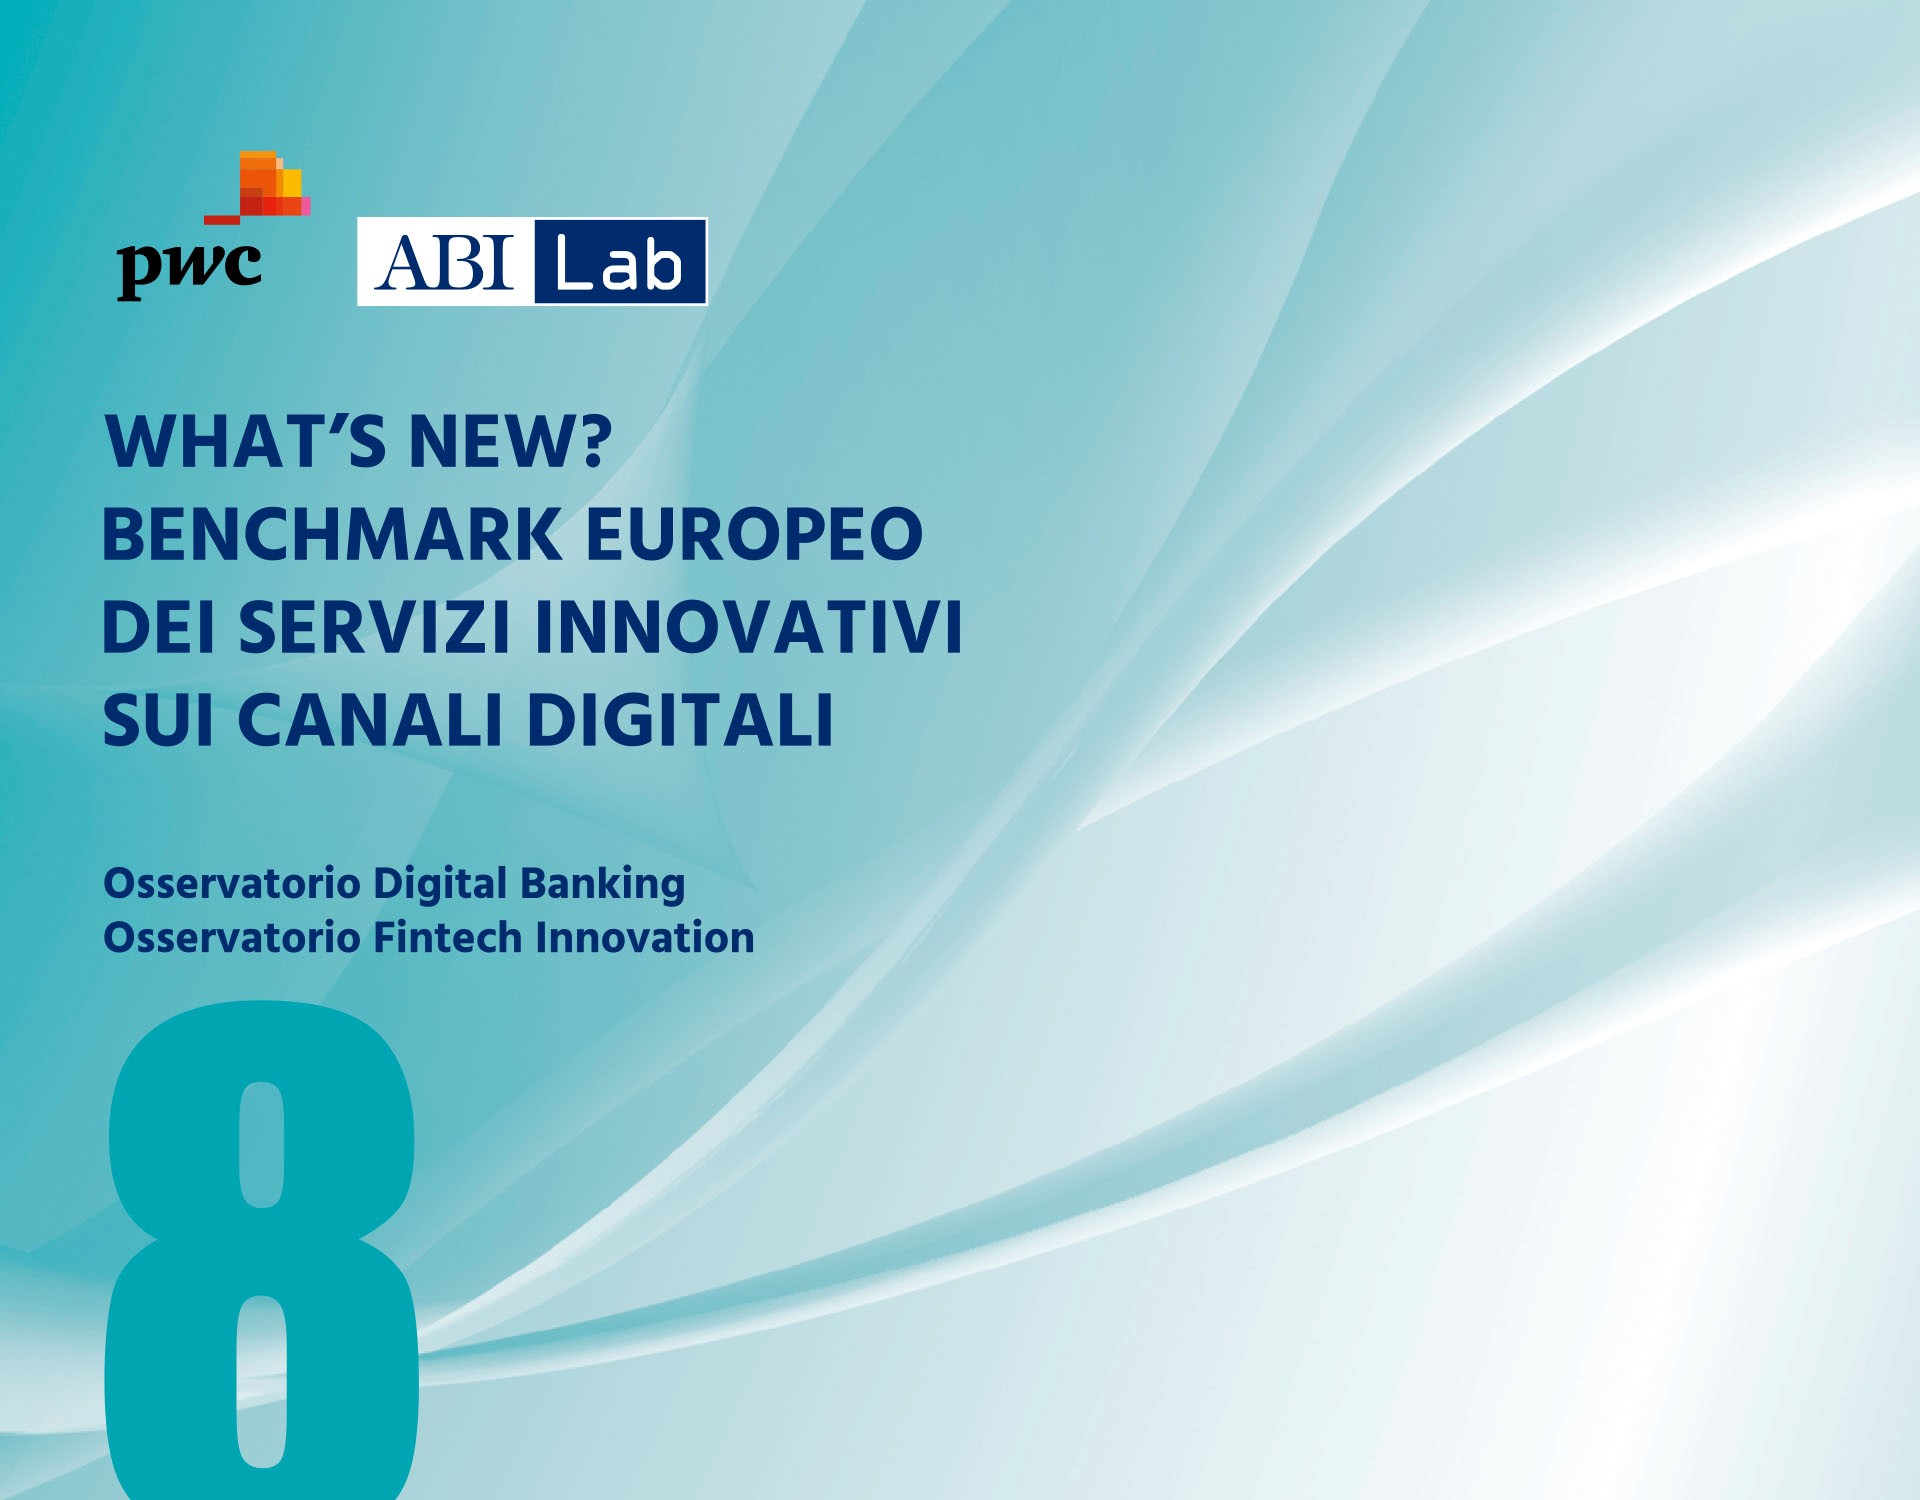 Rapporto ABI Lab PwC 2022 - What's new? Benchmark europeo dei servizi innovativi sui canali digitali